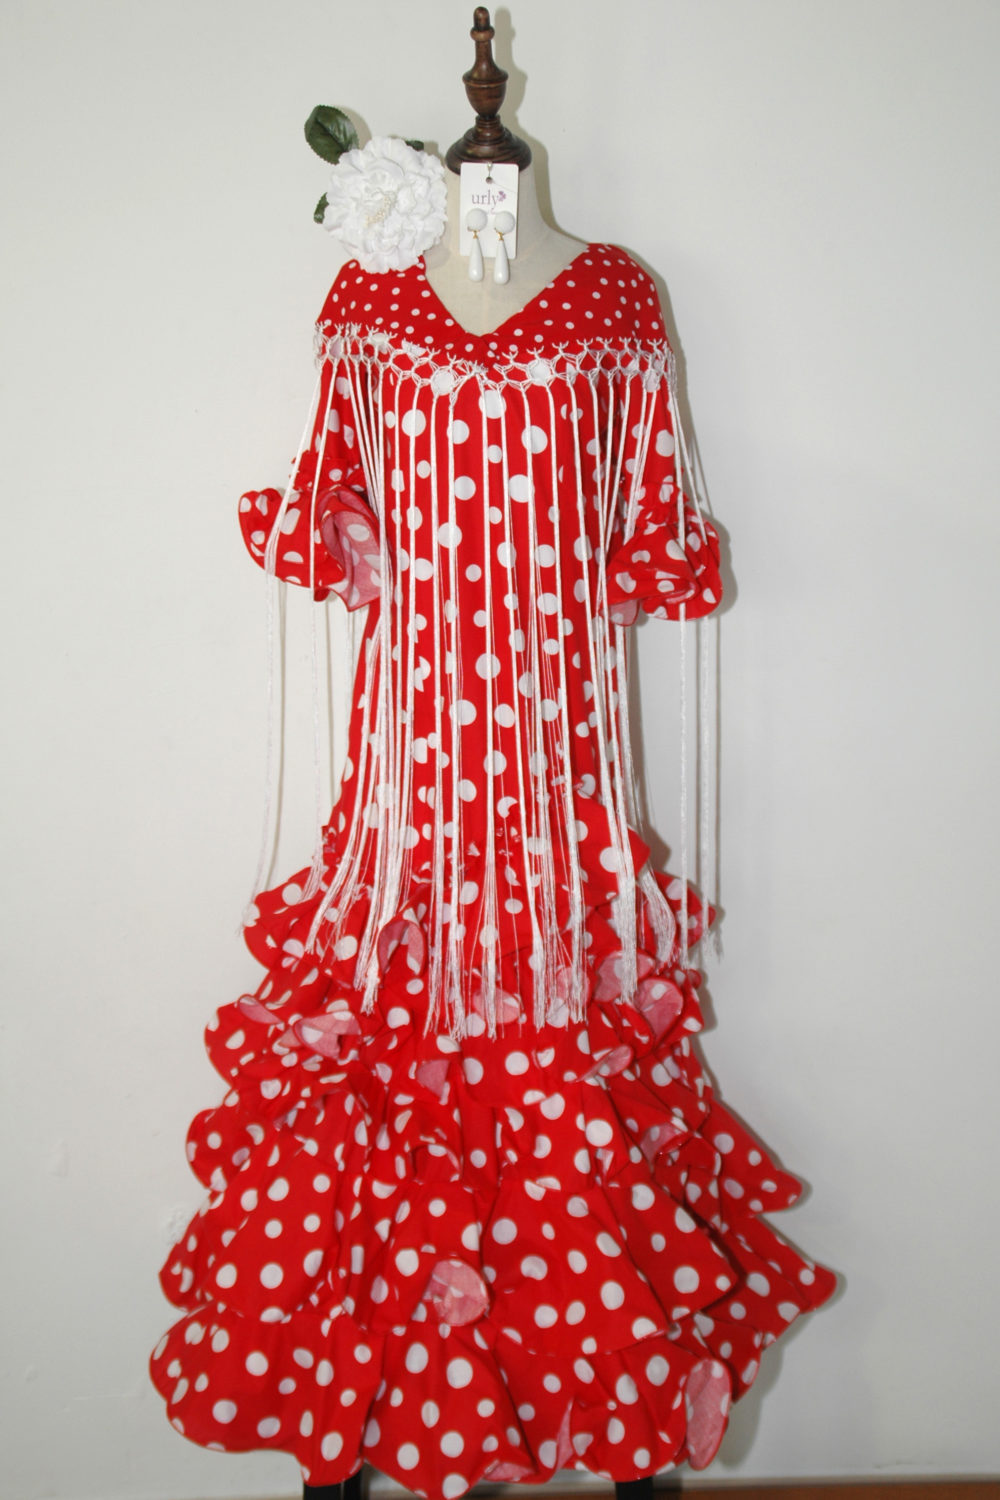 Vestido niña largo rojo y blanco. Talla 12 – Urly Flamenca – Urly